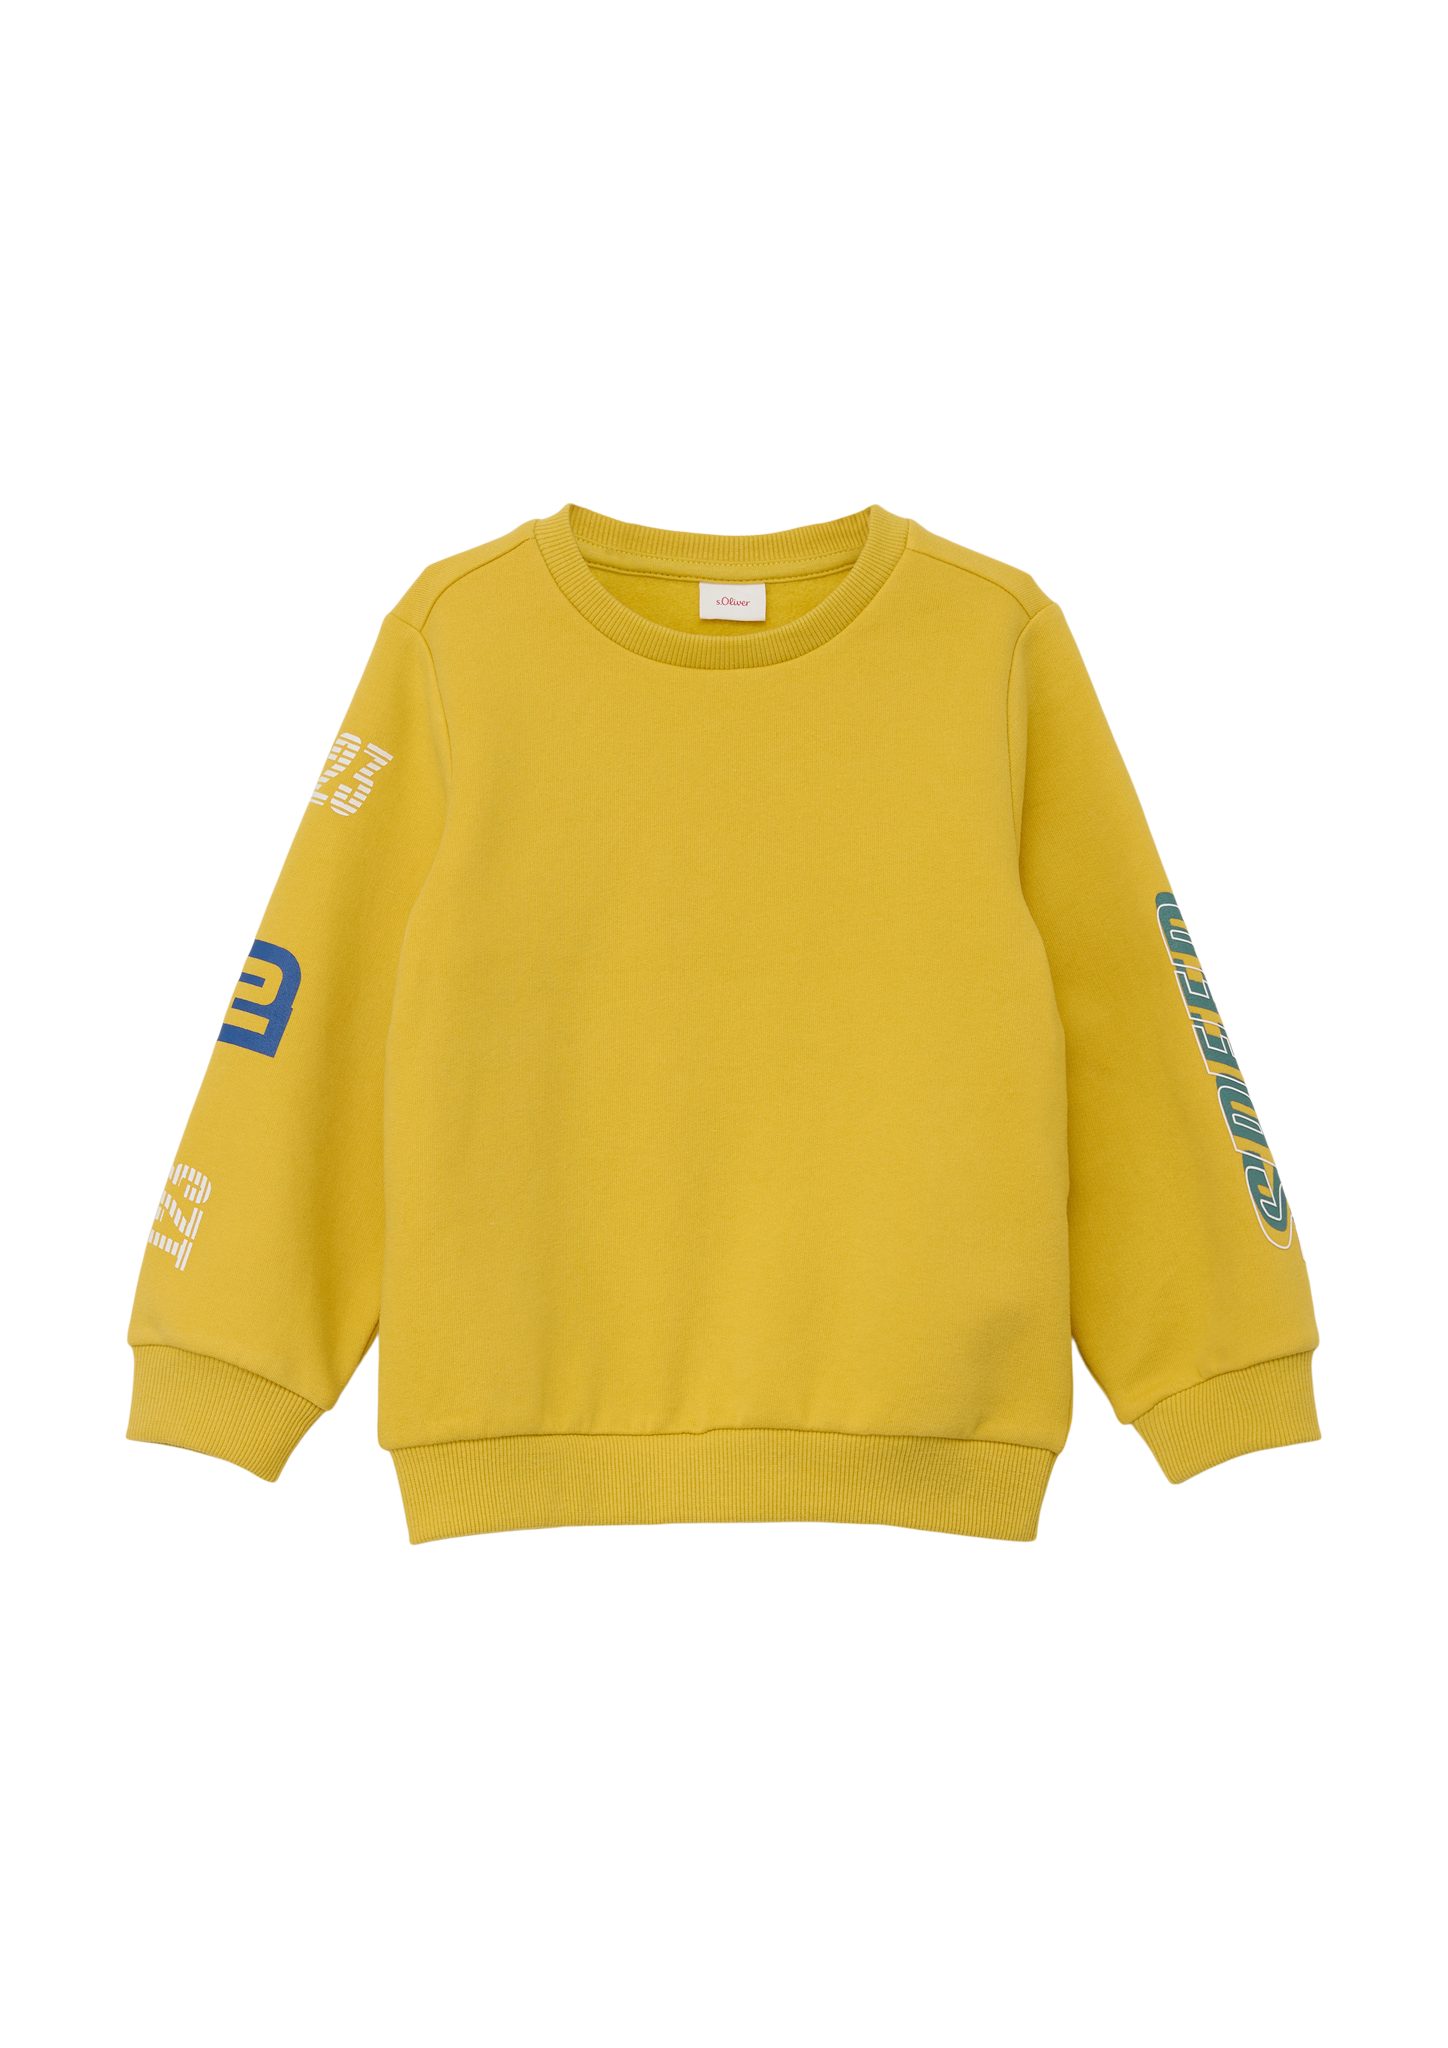 s.Oliver Sweatshirt Sweatshirt gelb Baumwollmix aus